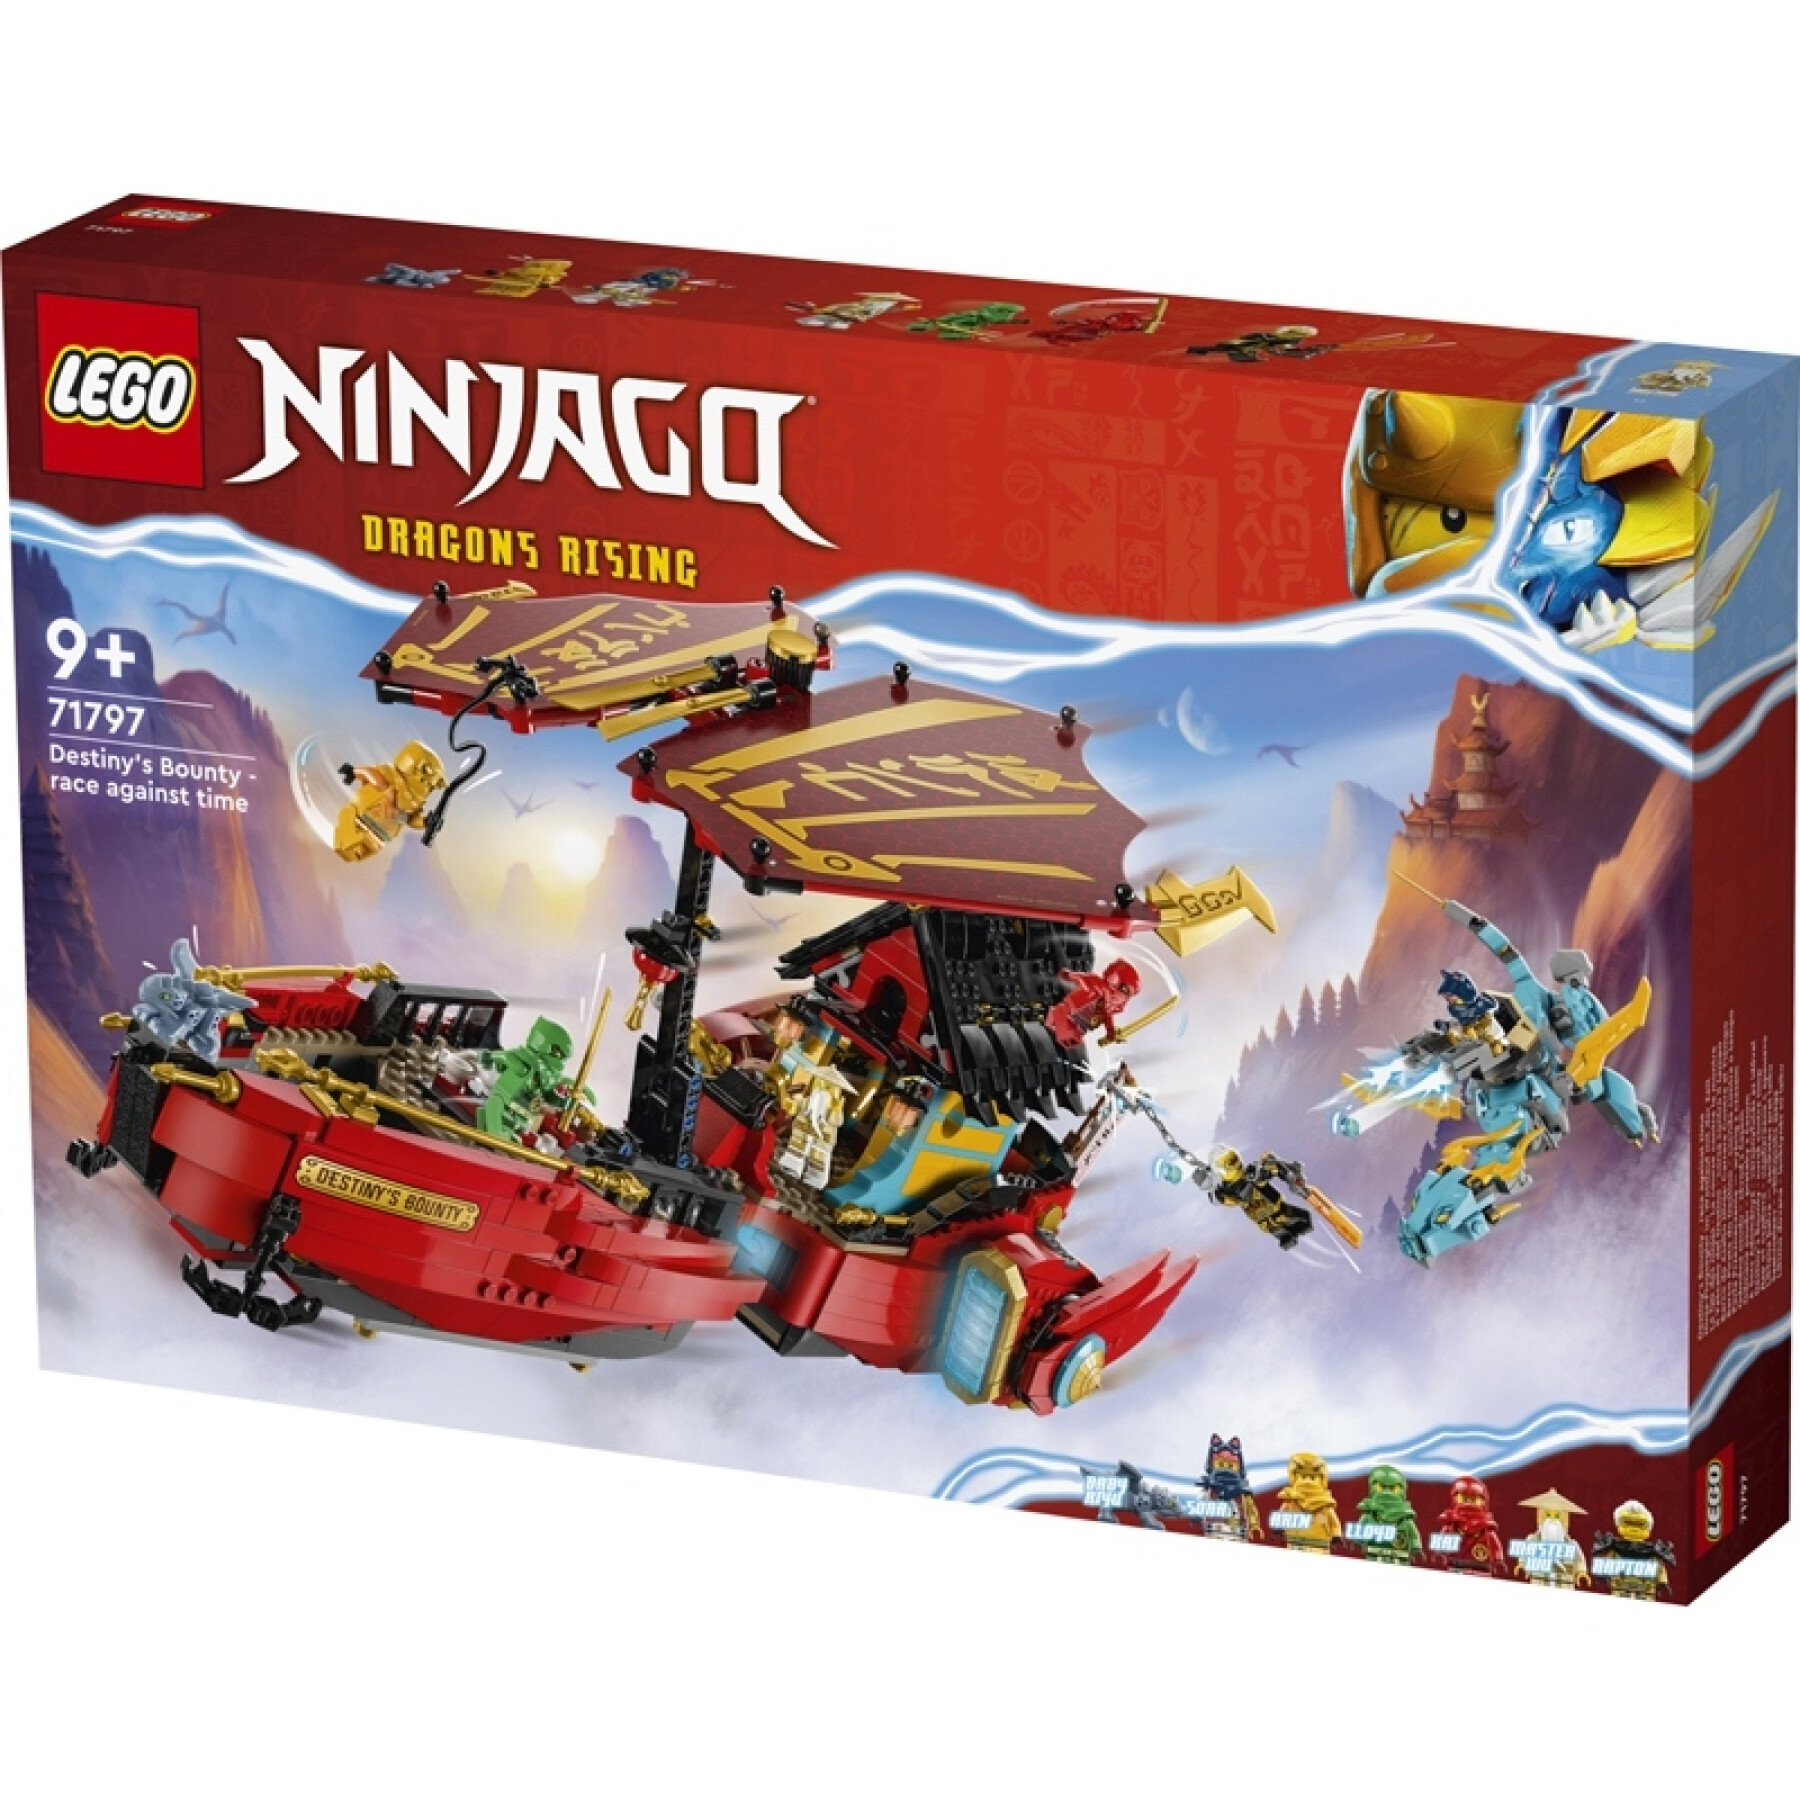 Conjuntos de construção Lego Qg Des Ninjas Ninjago